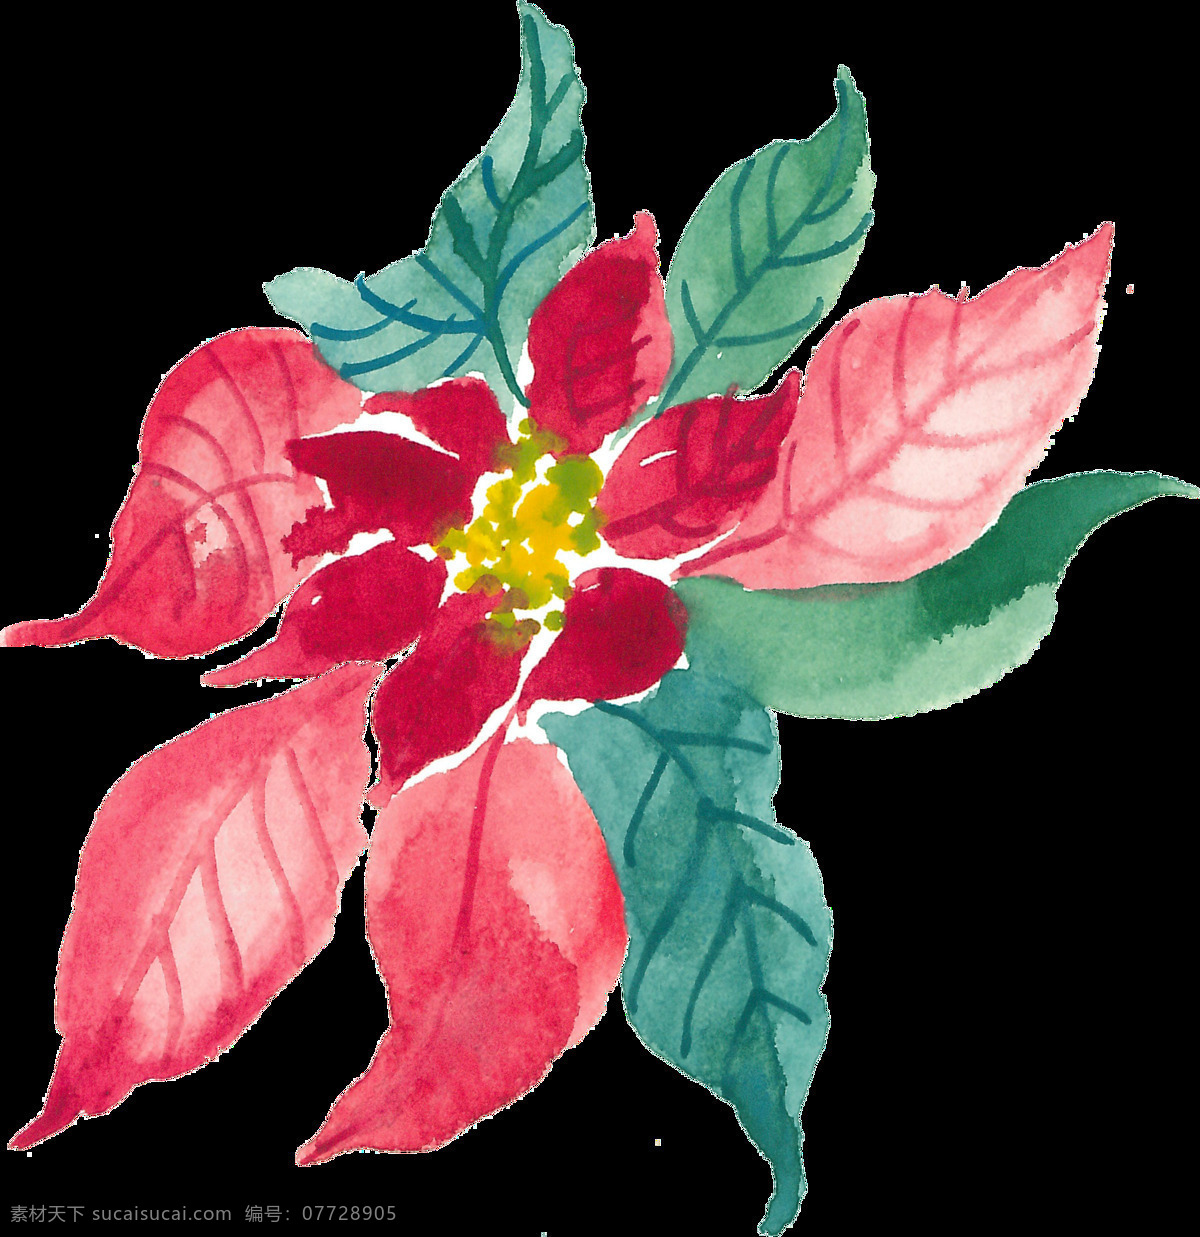 花团锦簇 透明 花团 锦簇 植物 卡通 抠图专用 装饰 设计素材